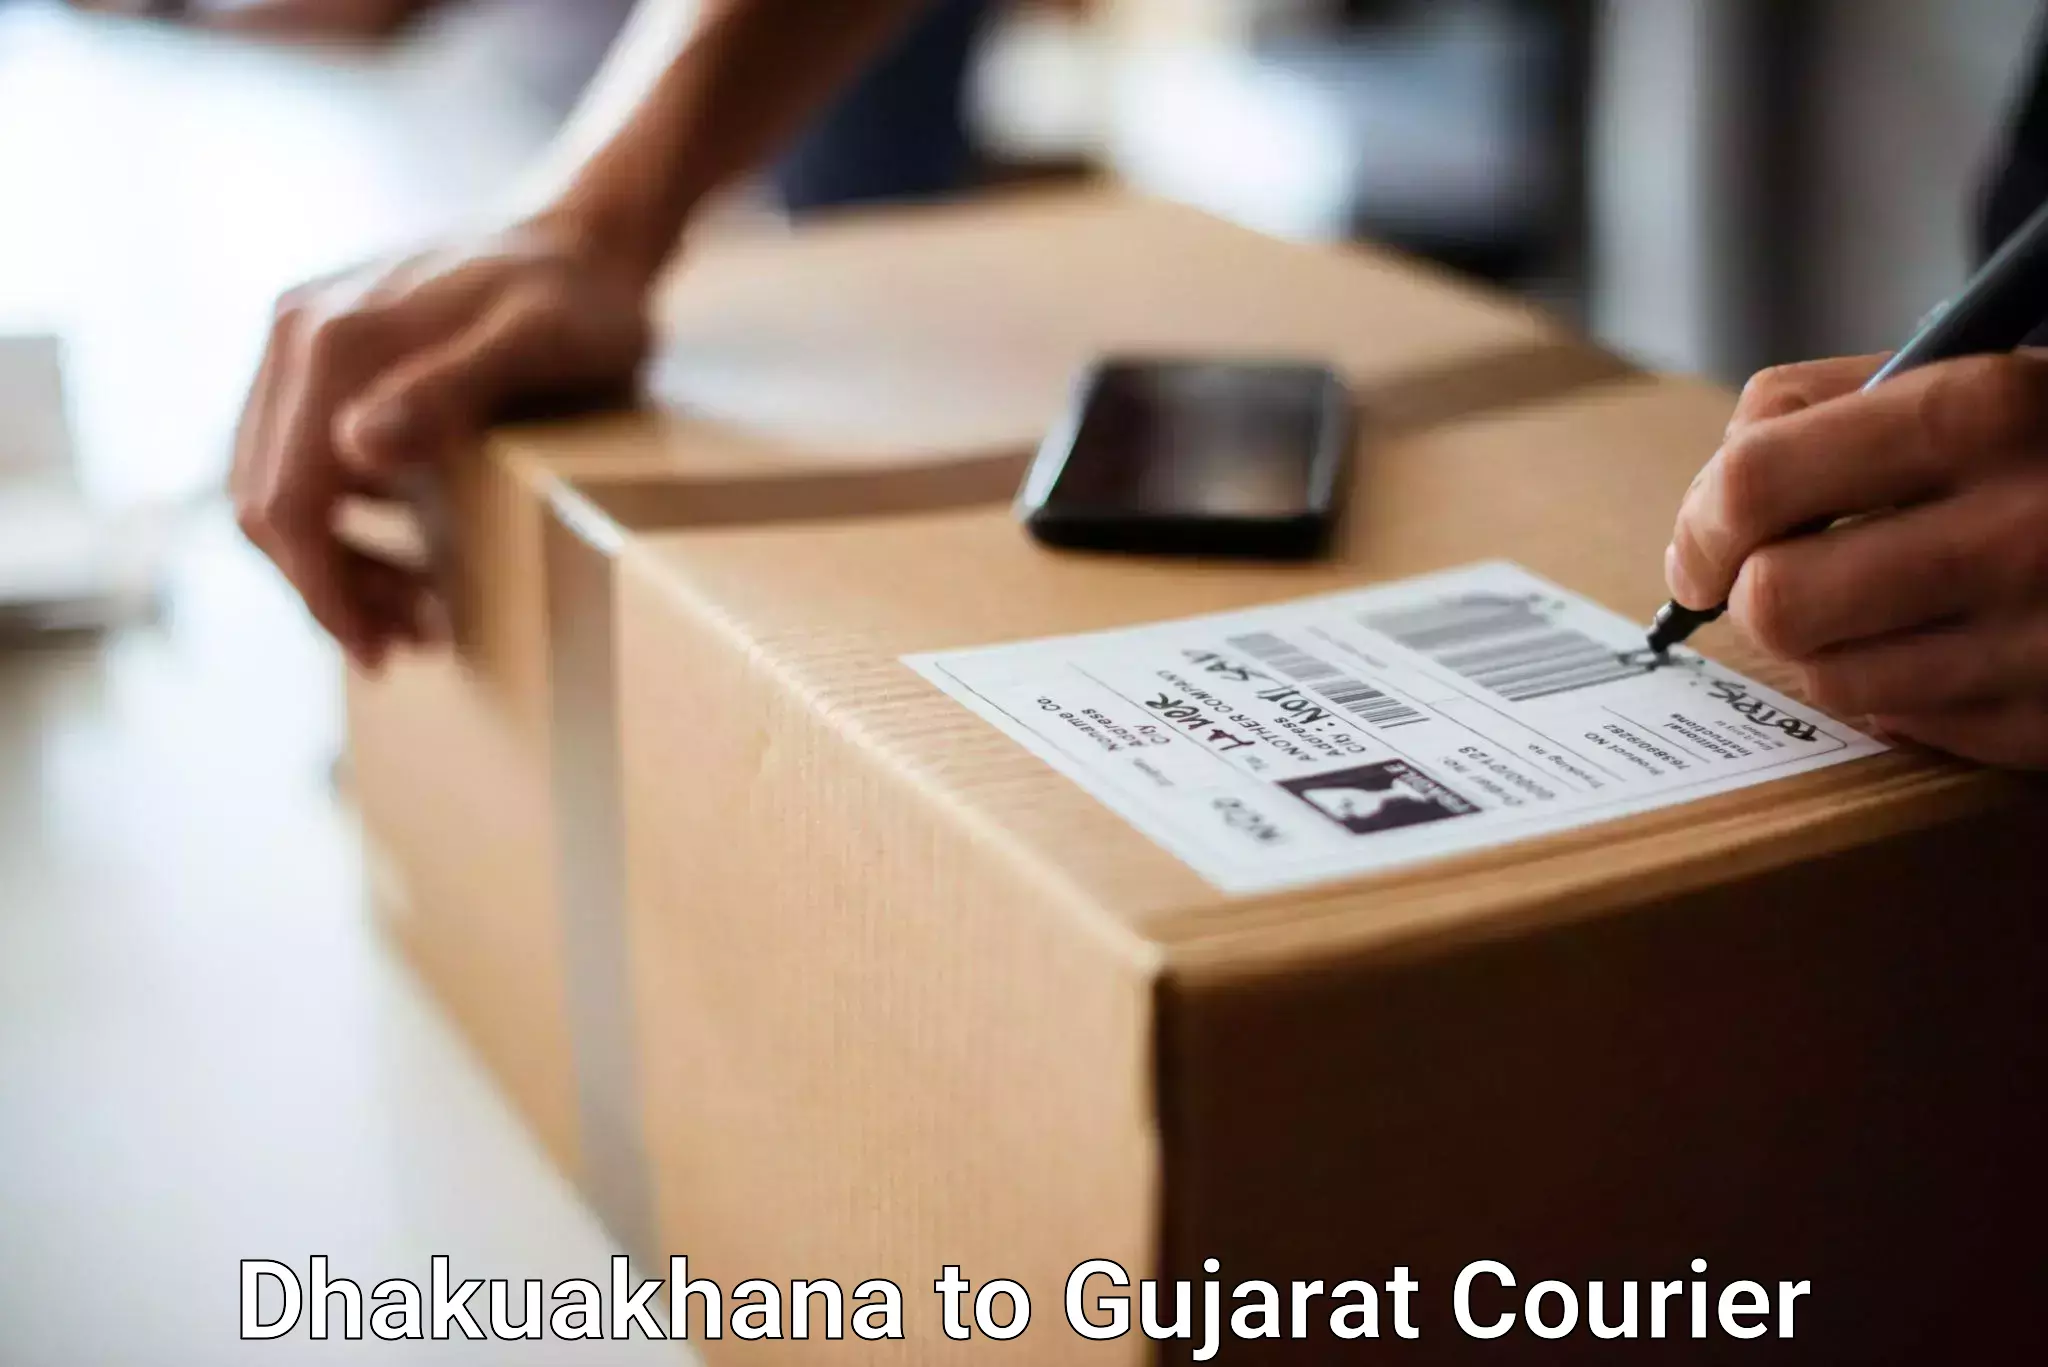 Luggage shipment tracking Dhakuakhana to Satlasana